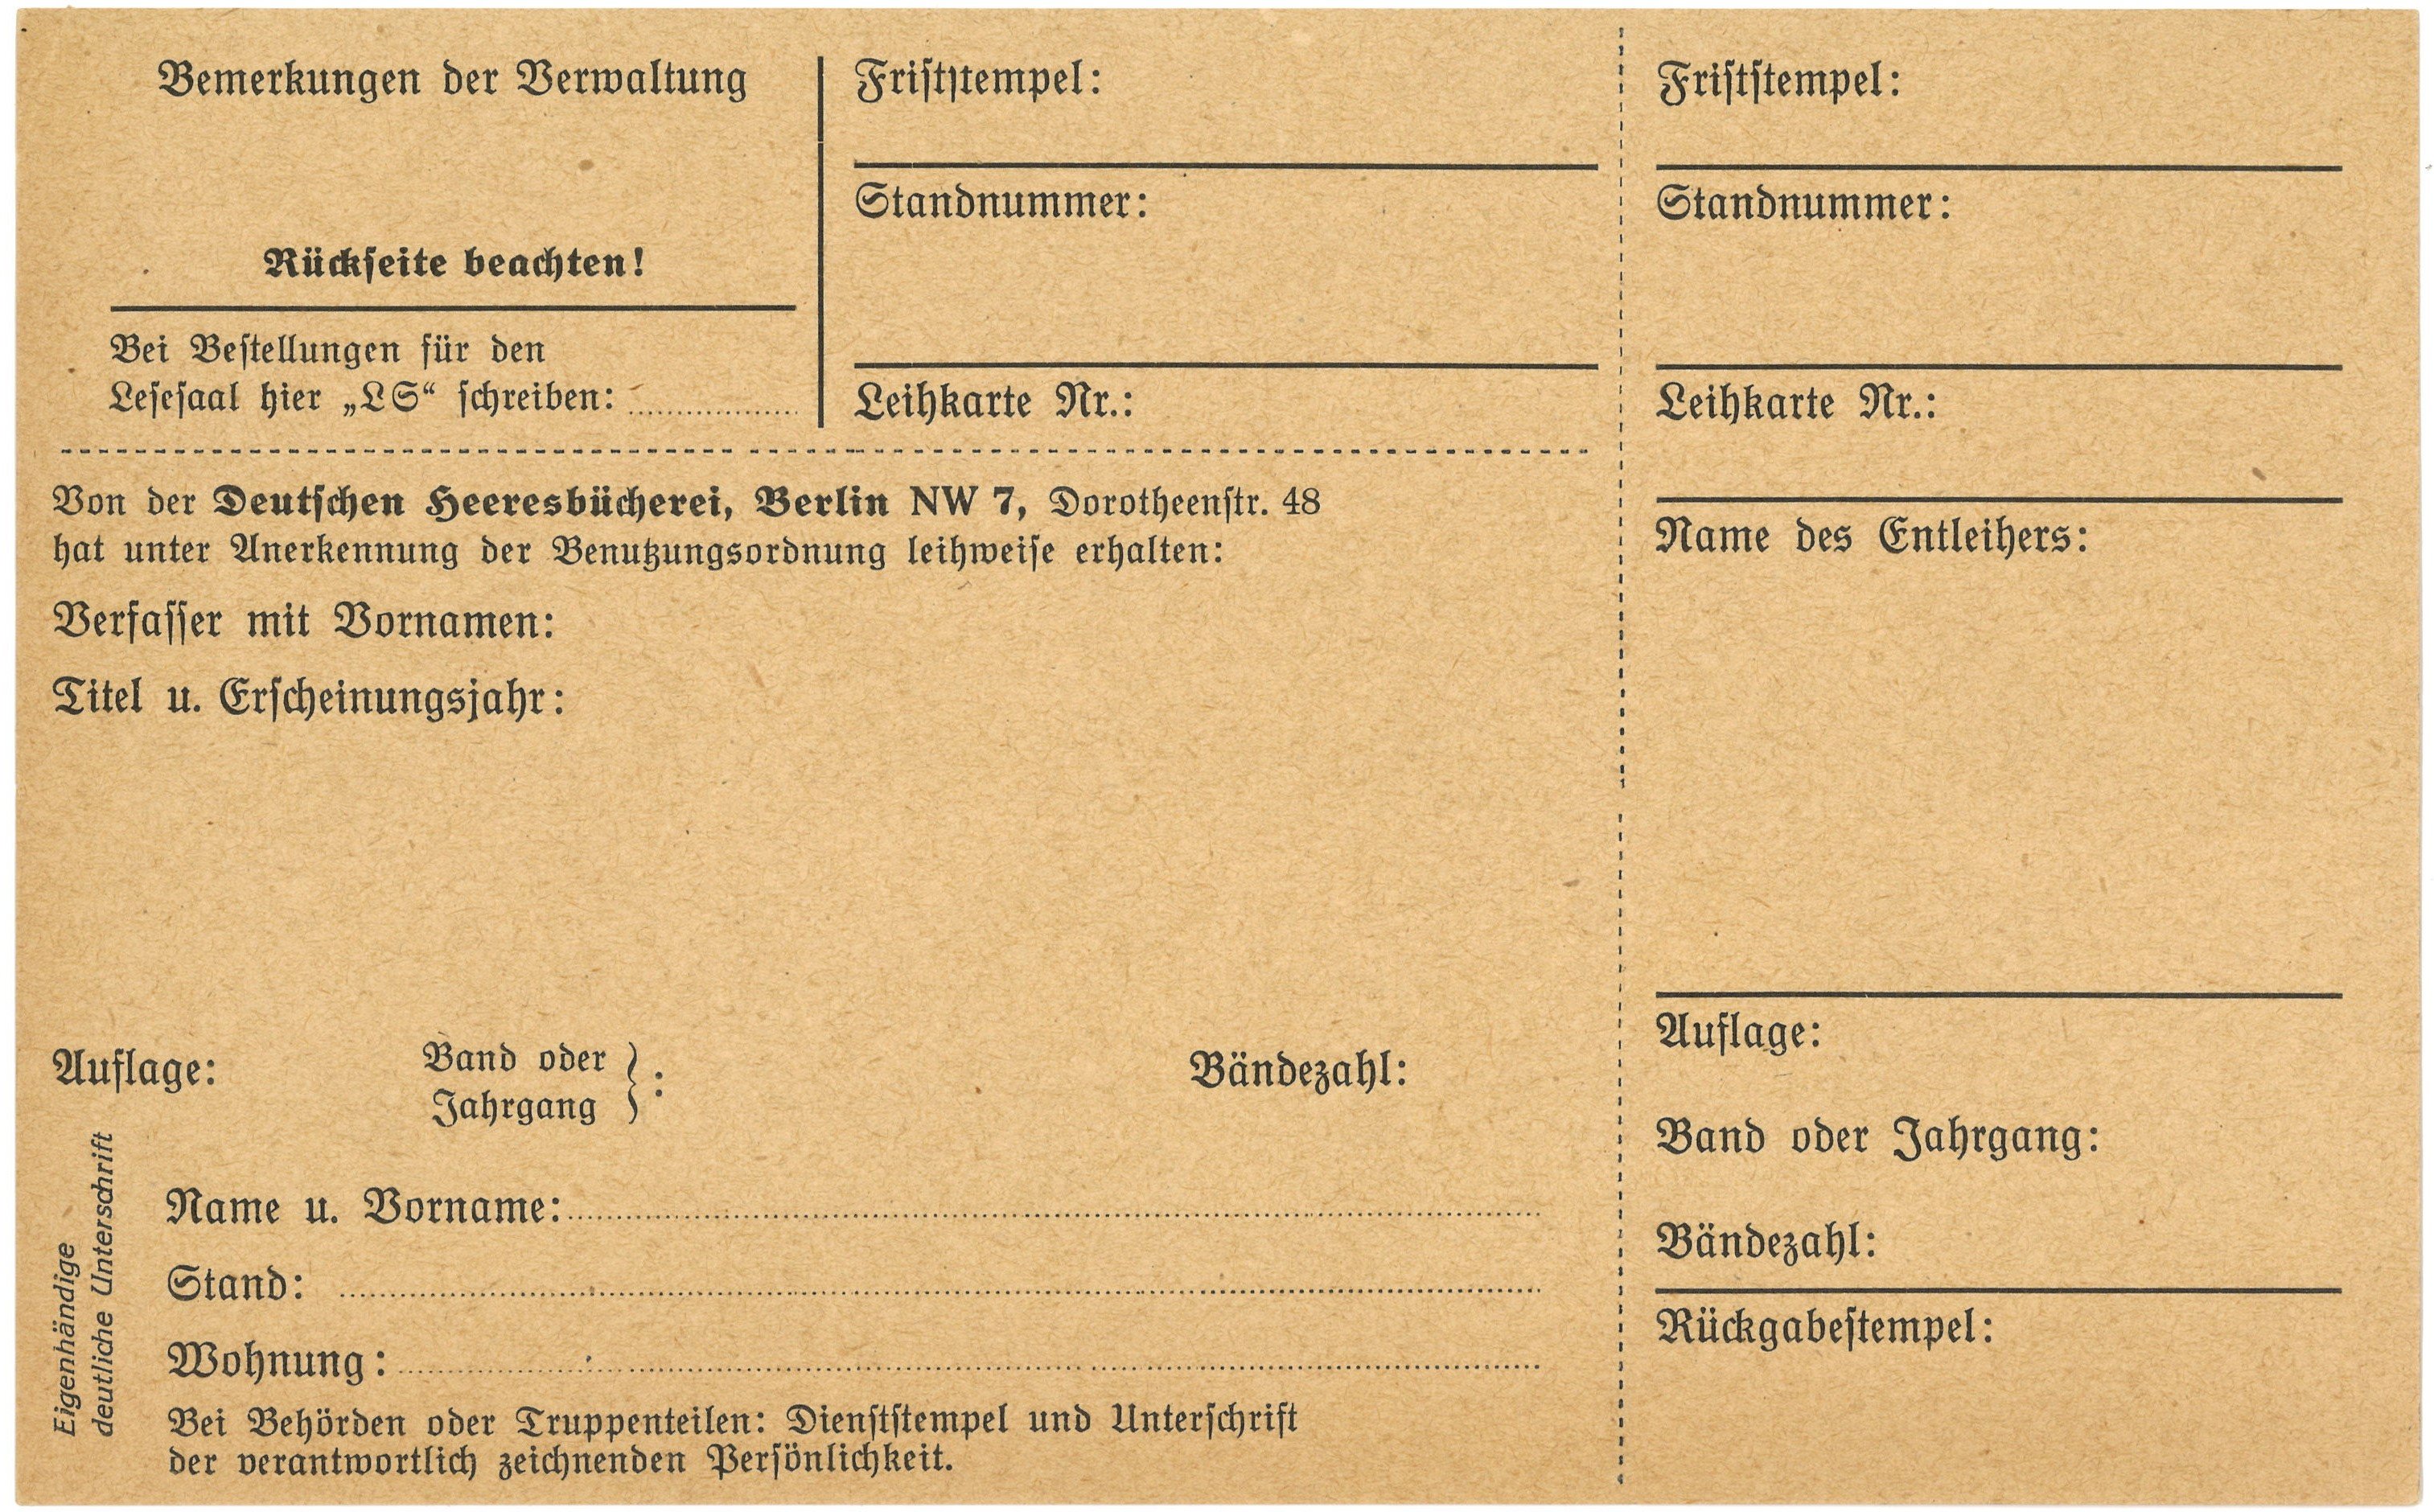 Berlin, Deutsche Heeresbücherei: Leihschein (Landesgeschichtliche Vereinigung für die Mark Brandenburg e.V., Archiv CC BY)